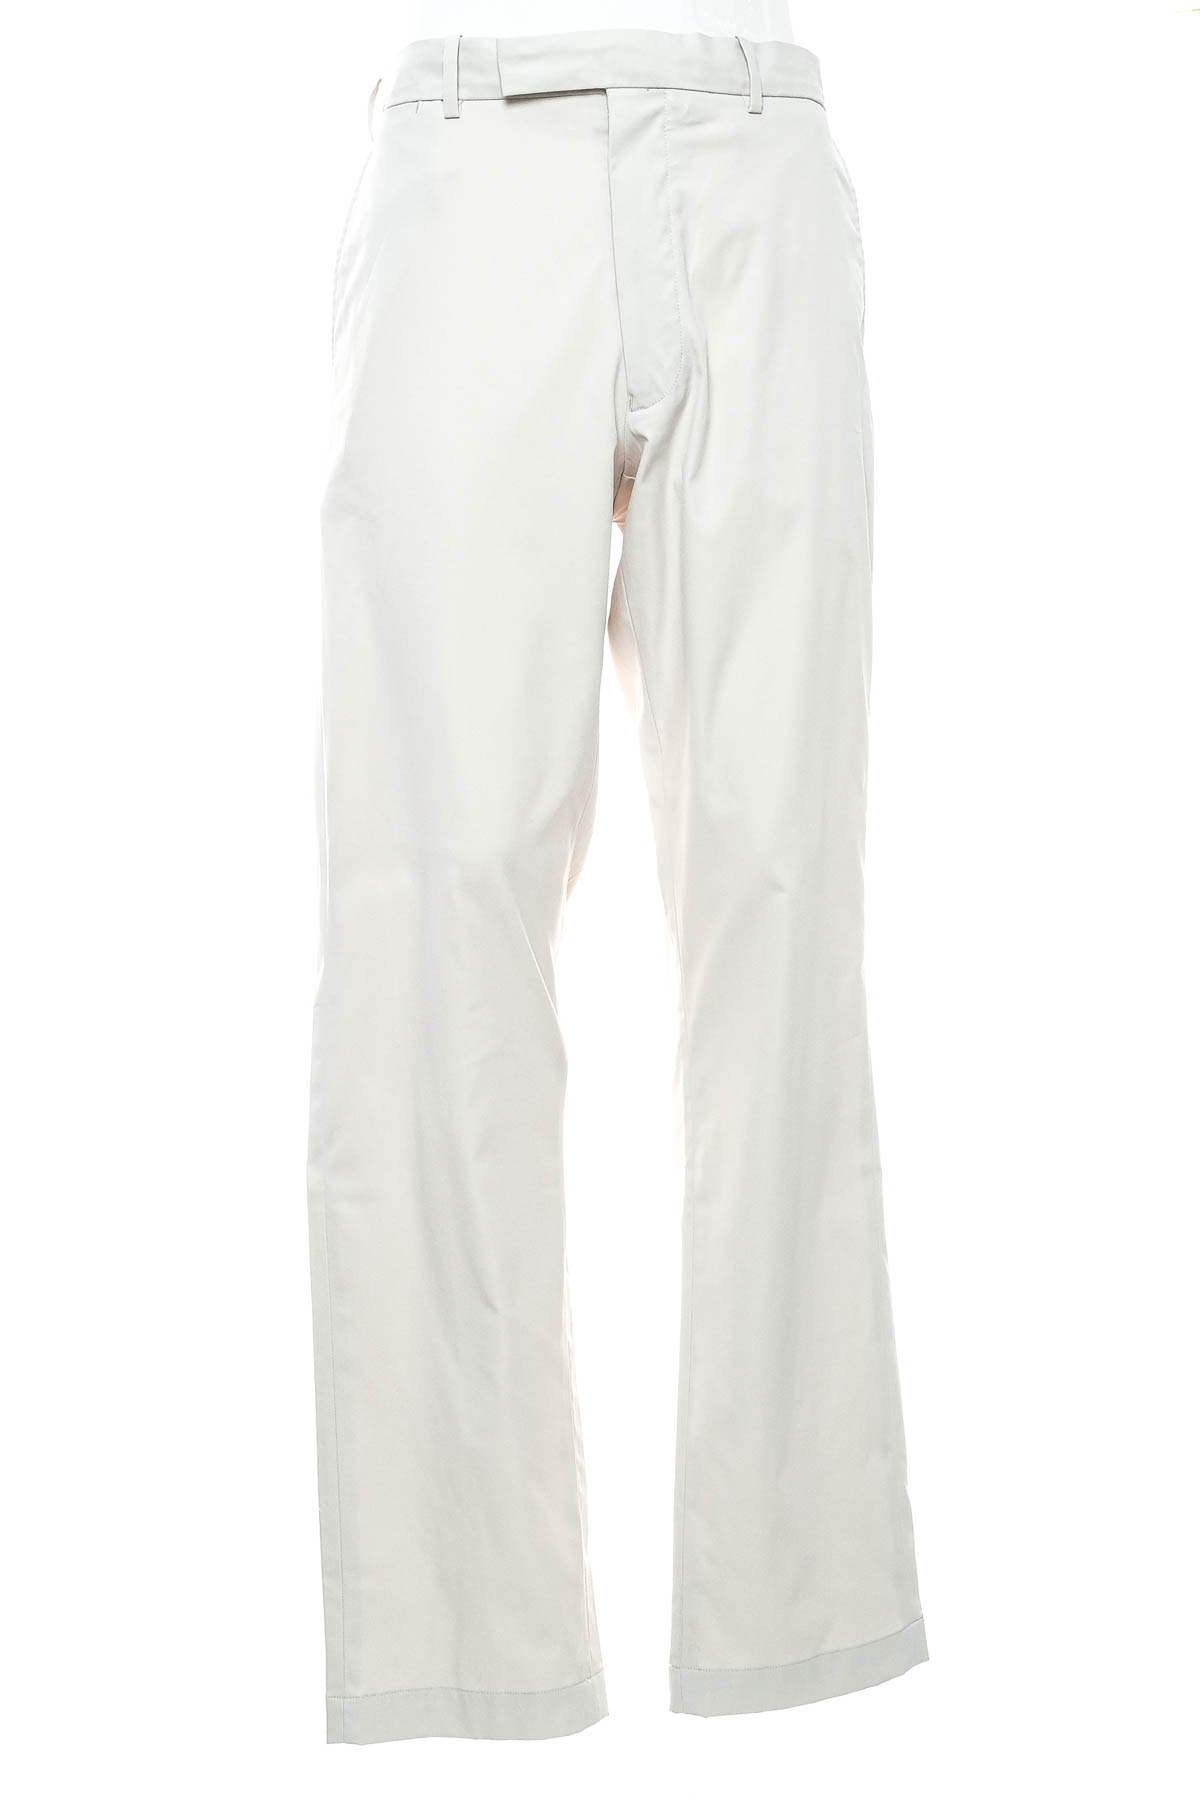 Men's trousers - RLX x Ralph Lauren - 0